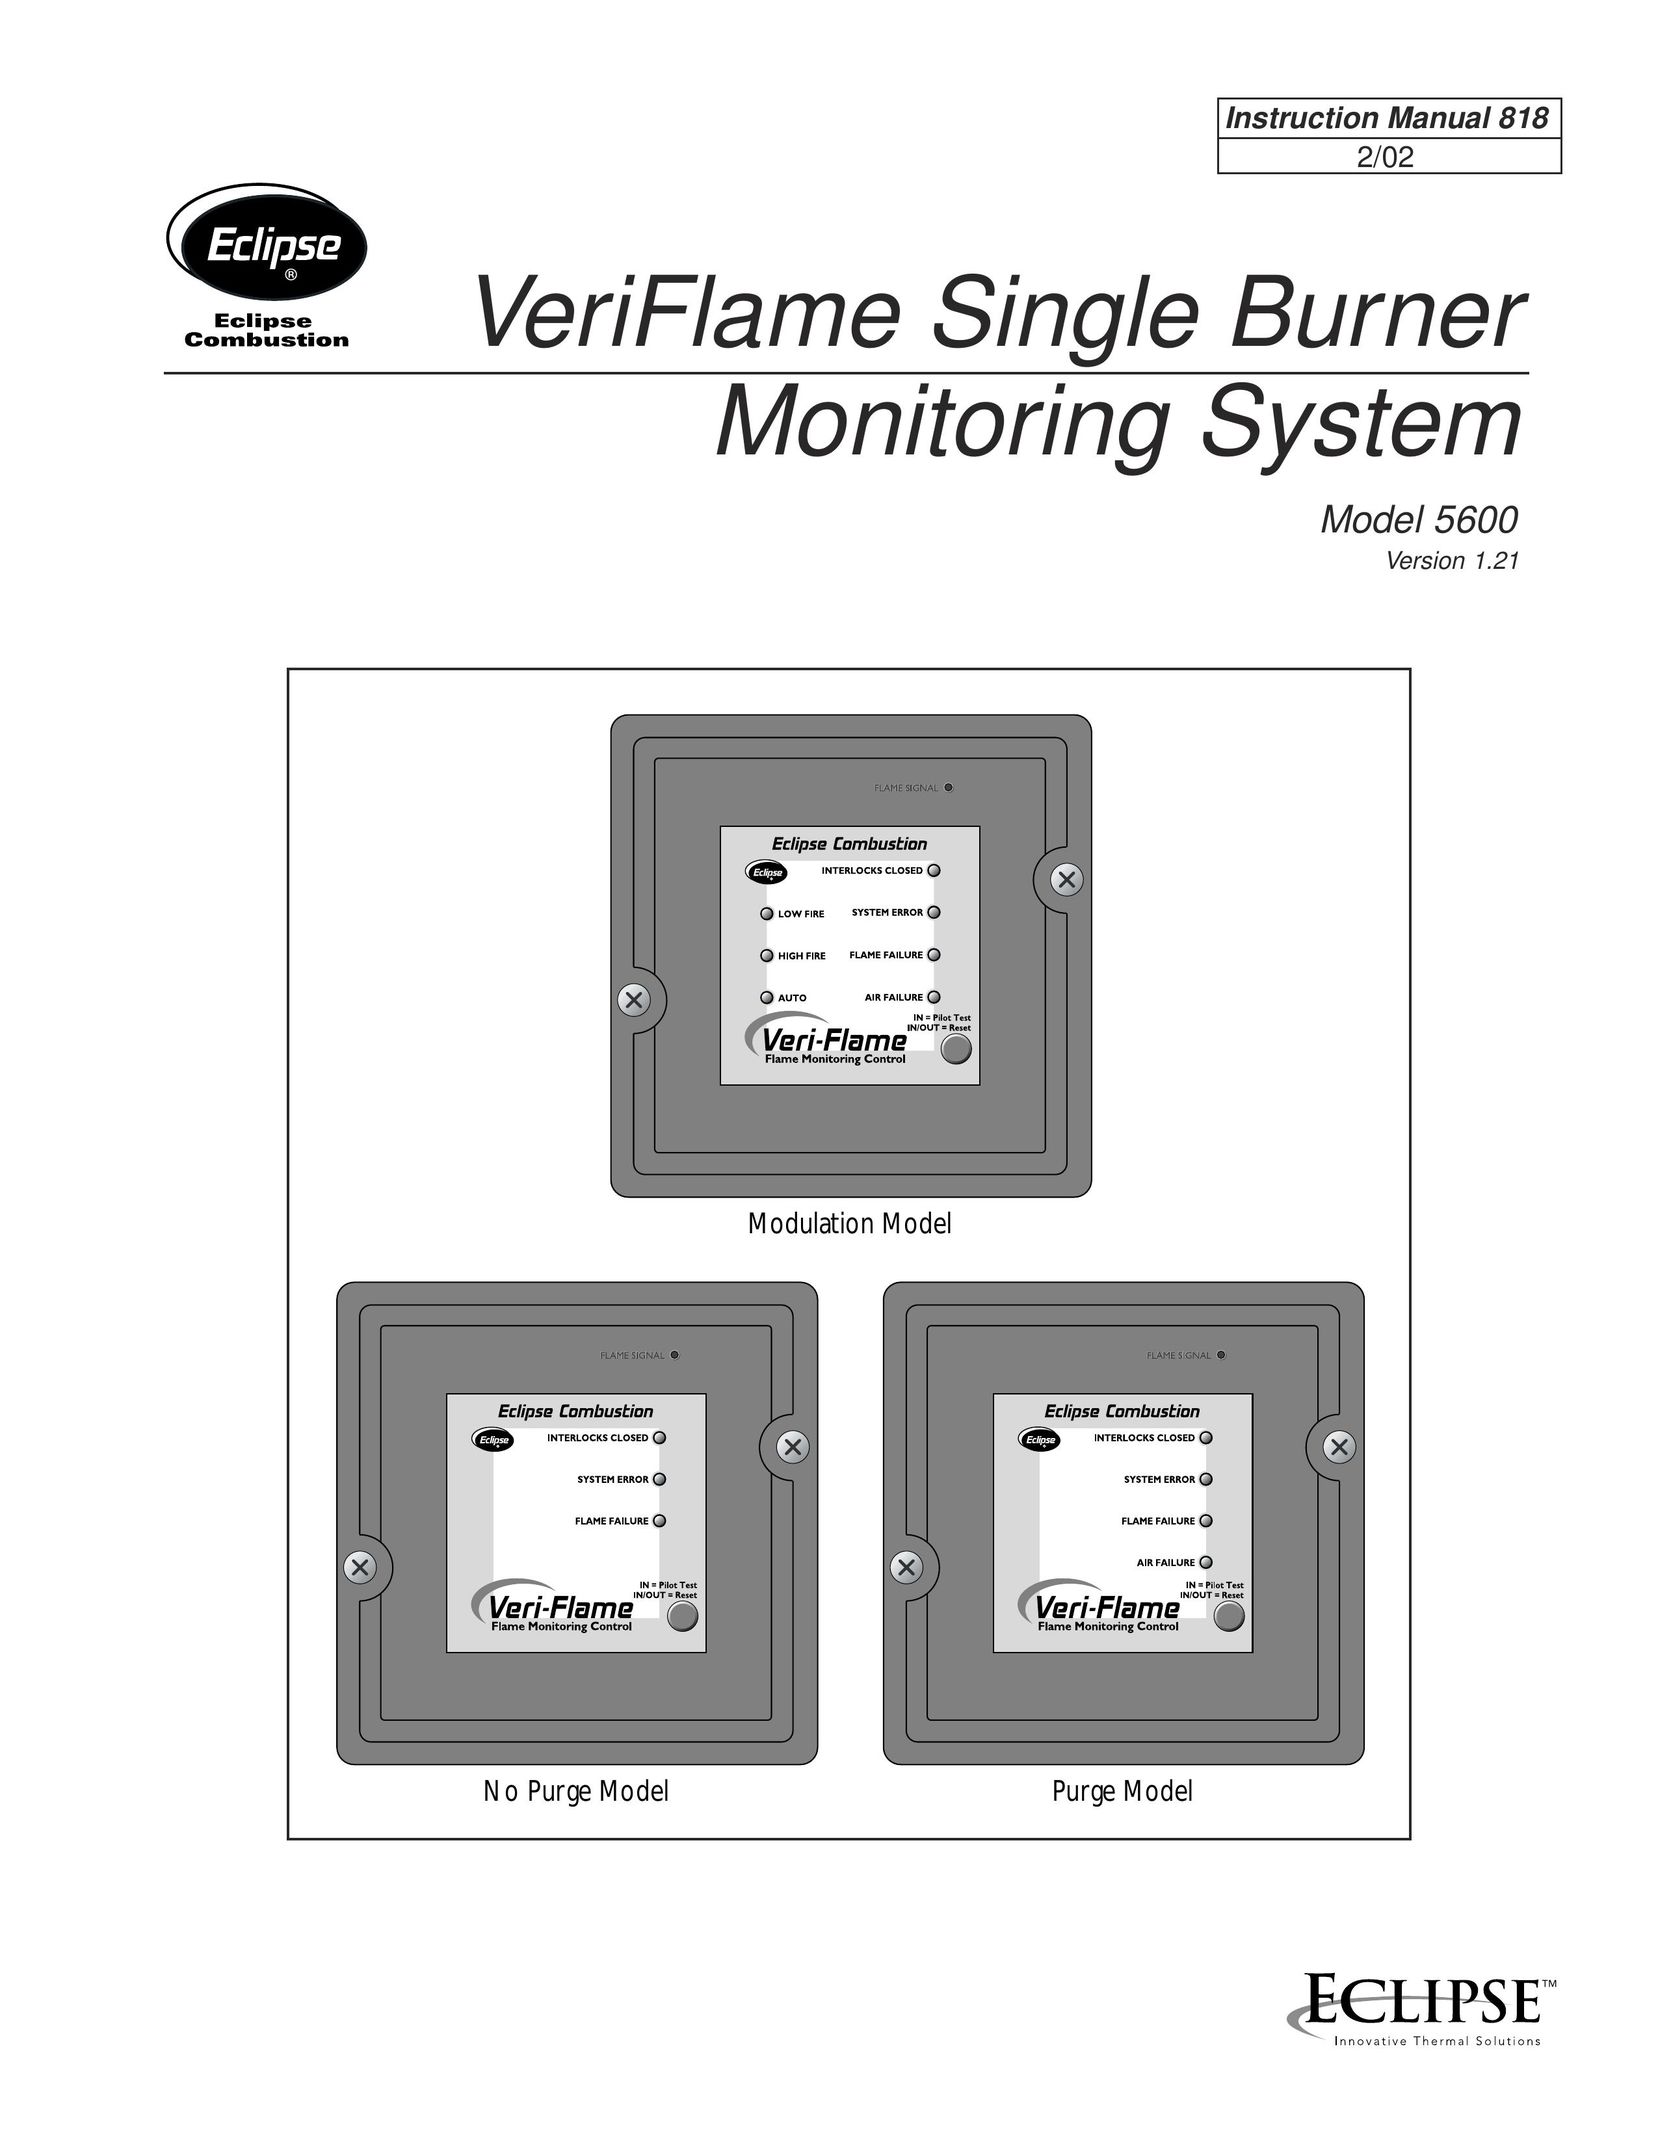 Eclipse Combustion VeriFlame Single Burner Monitoring System Burner User Manual